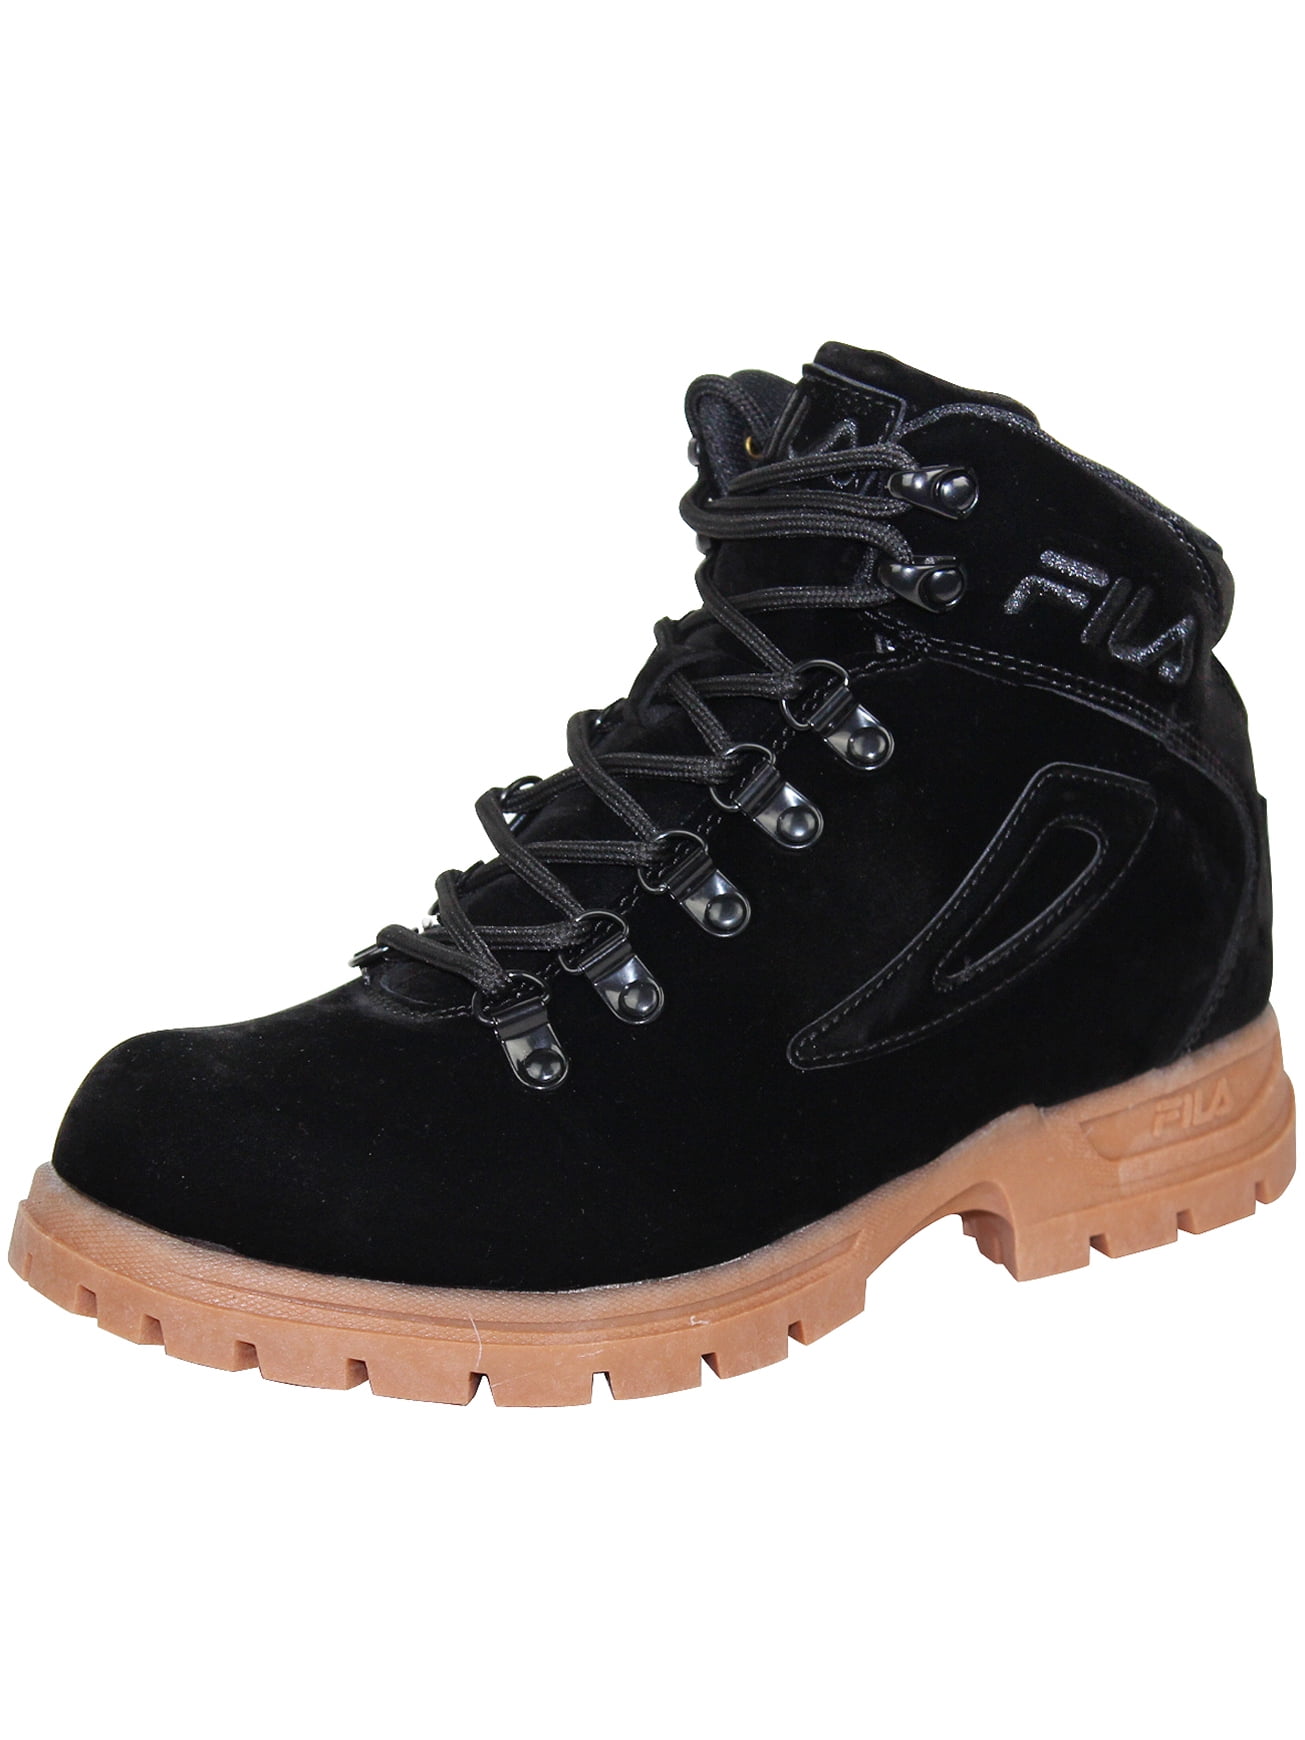 waarheid gegevens Ademen Fila Diviner FS Men's Hiking Boots Outdoor Padded Shoes Black - Walmart.com